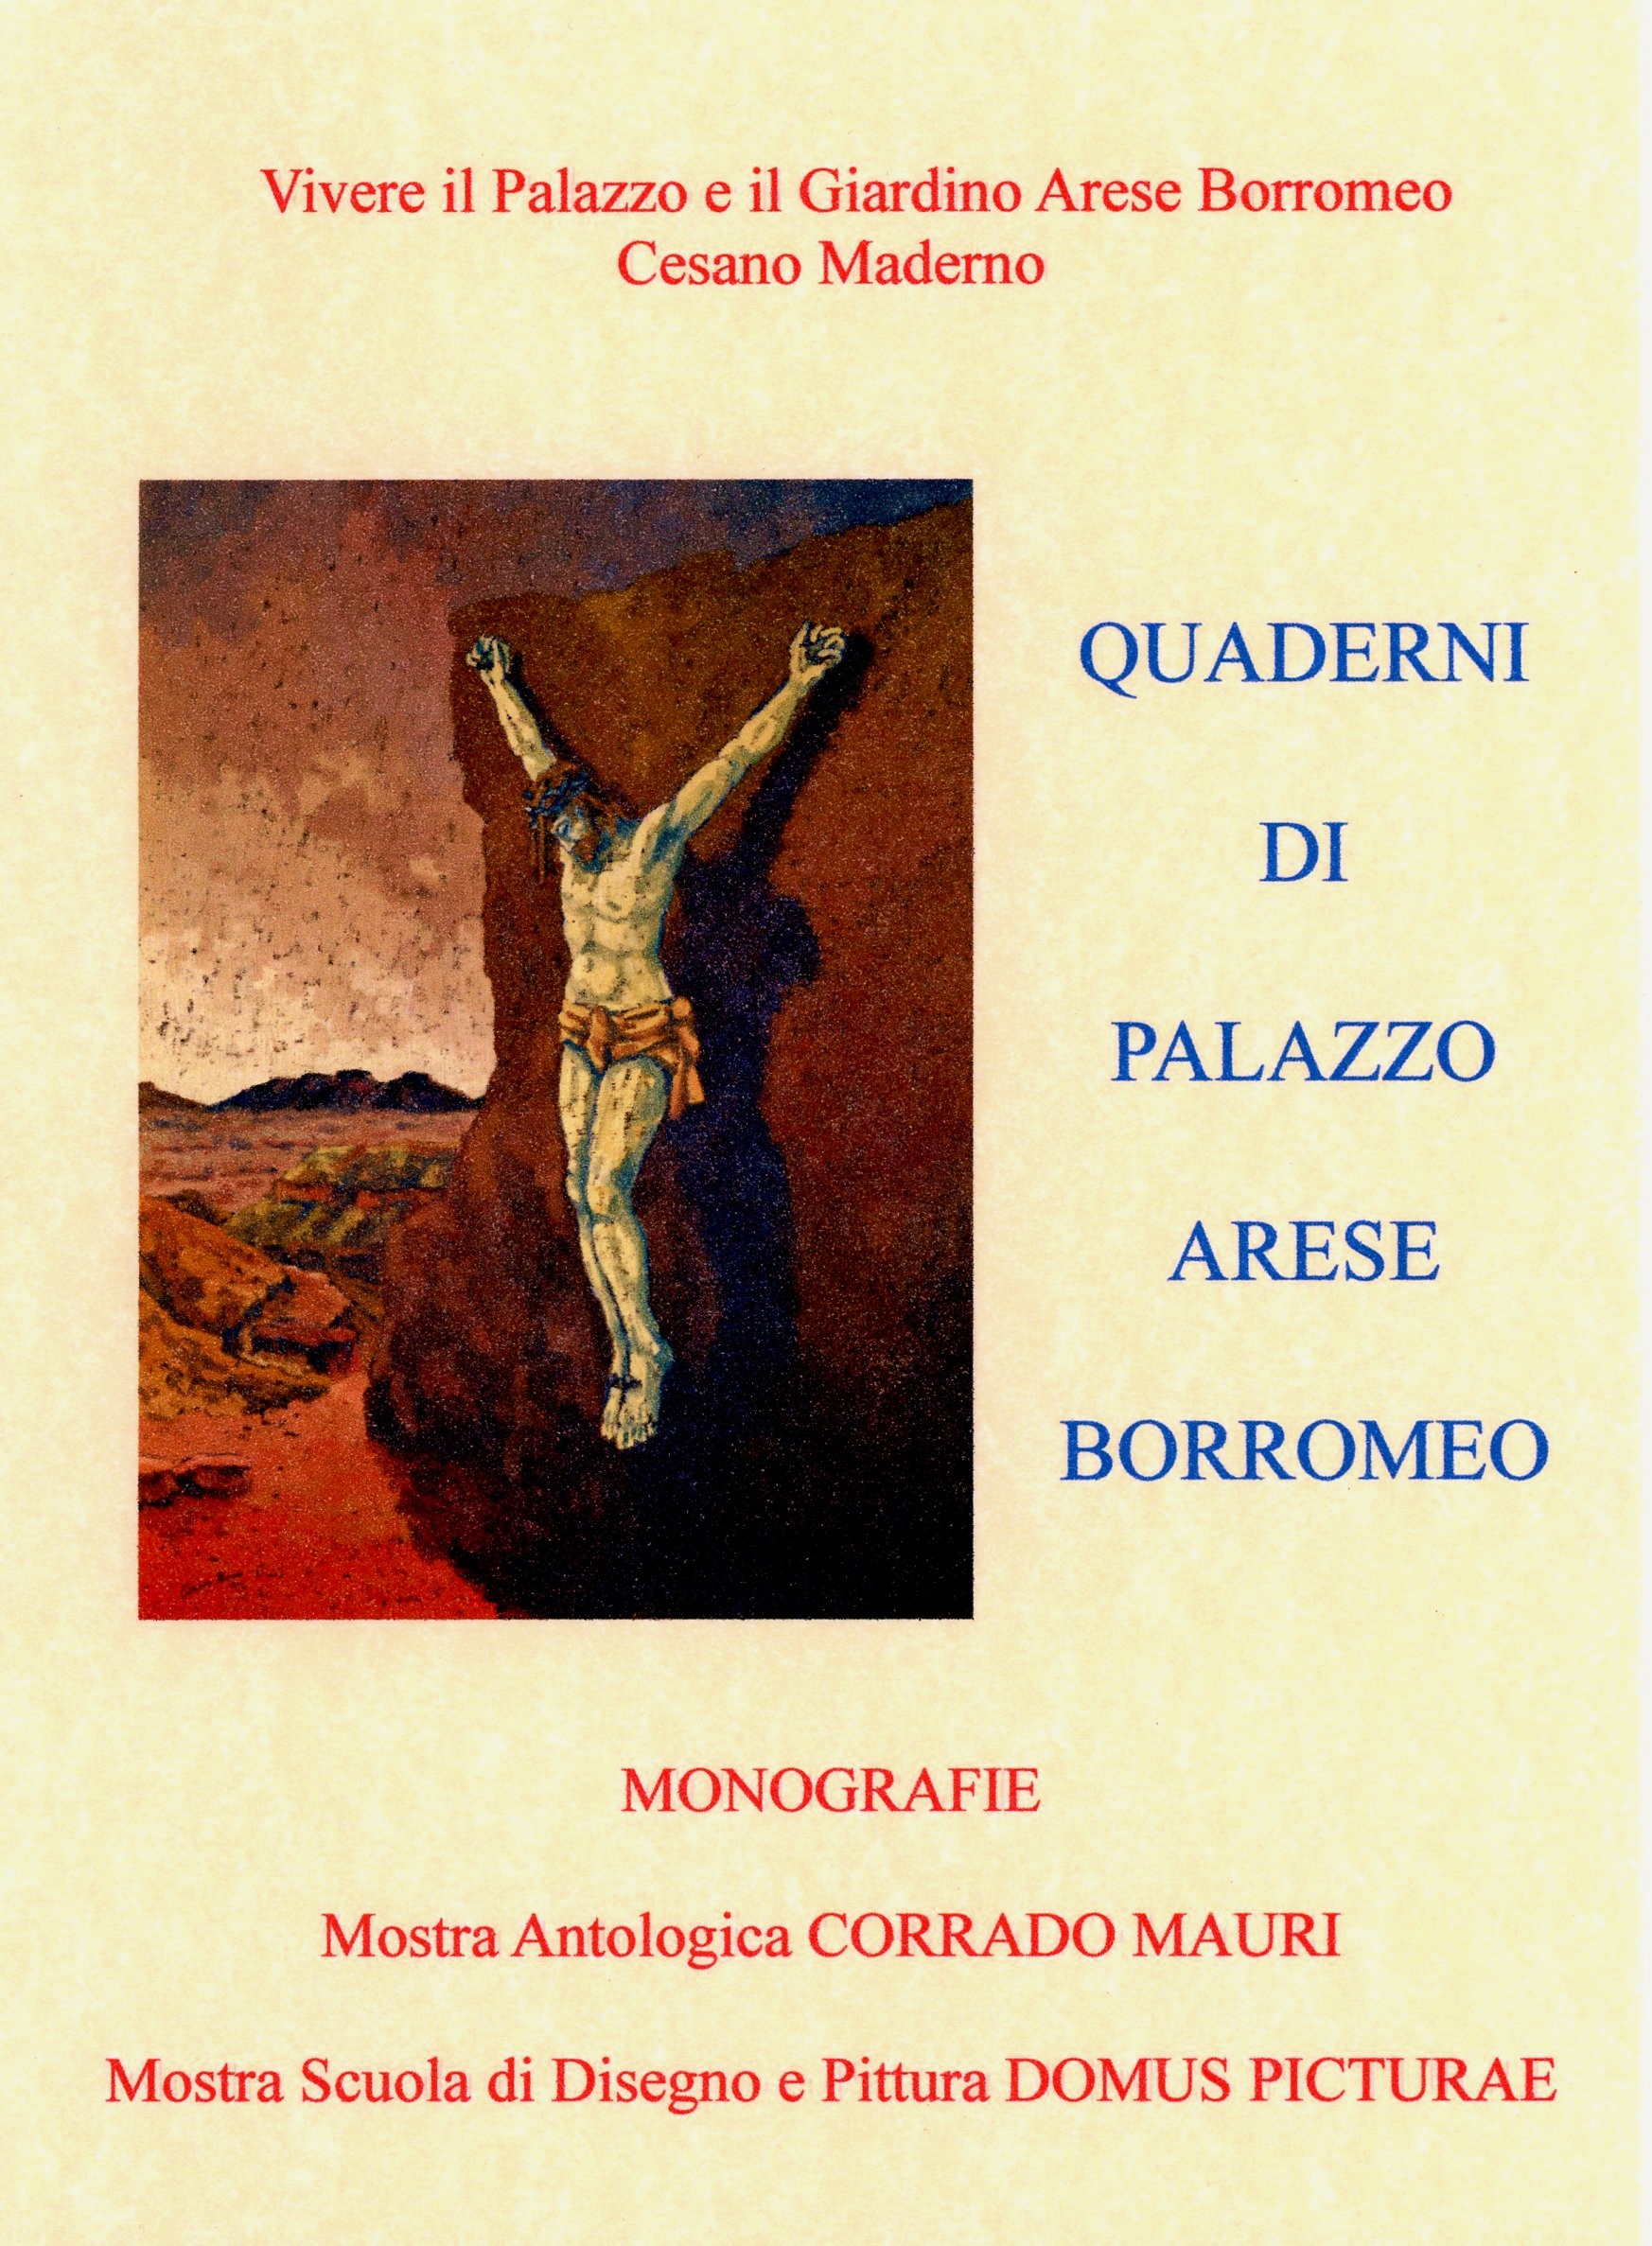 Mostra Antologica di Corrado Mauri e della Scuola di Disegno e Pittura Domus Picturæ 